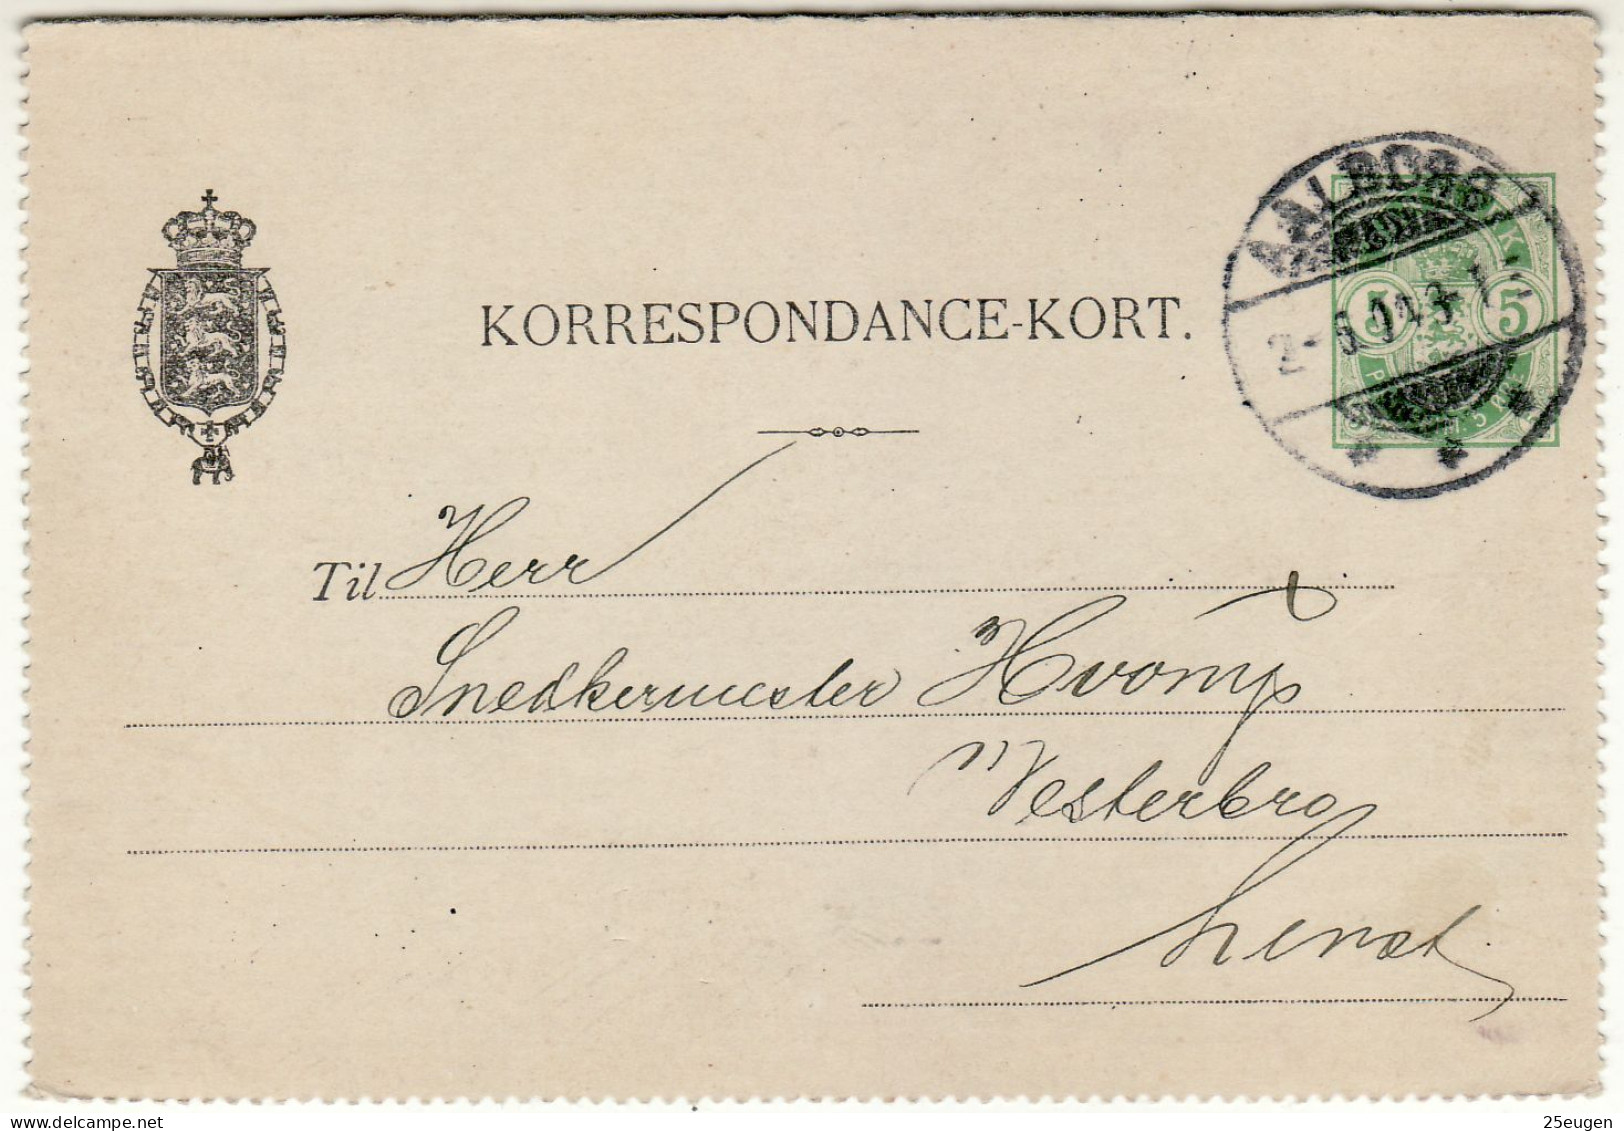 DENMARK 1904 CARD LETTER MiNr K 14 SENT FROM AALBORG - Postal Stationery